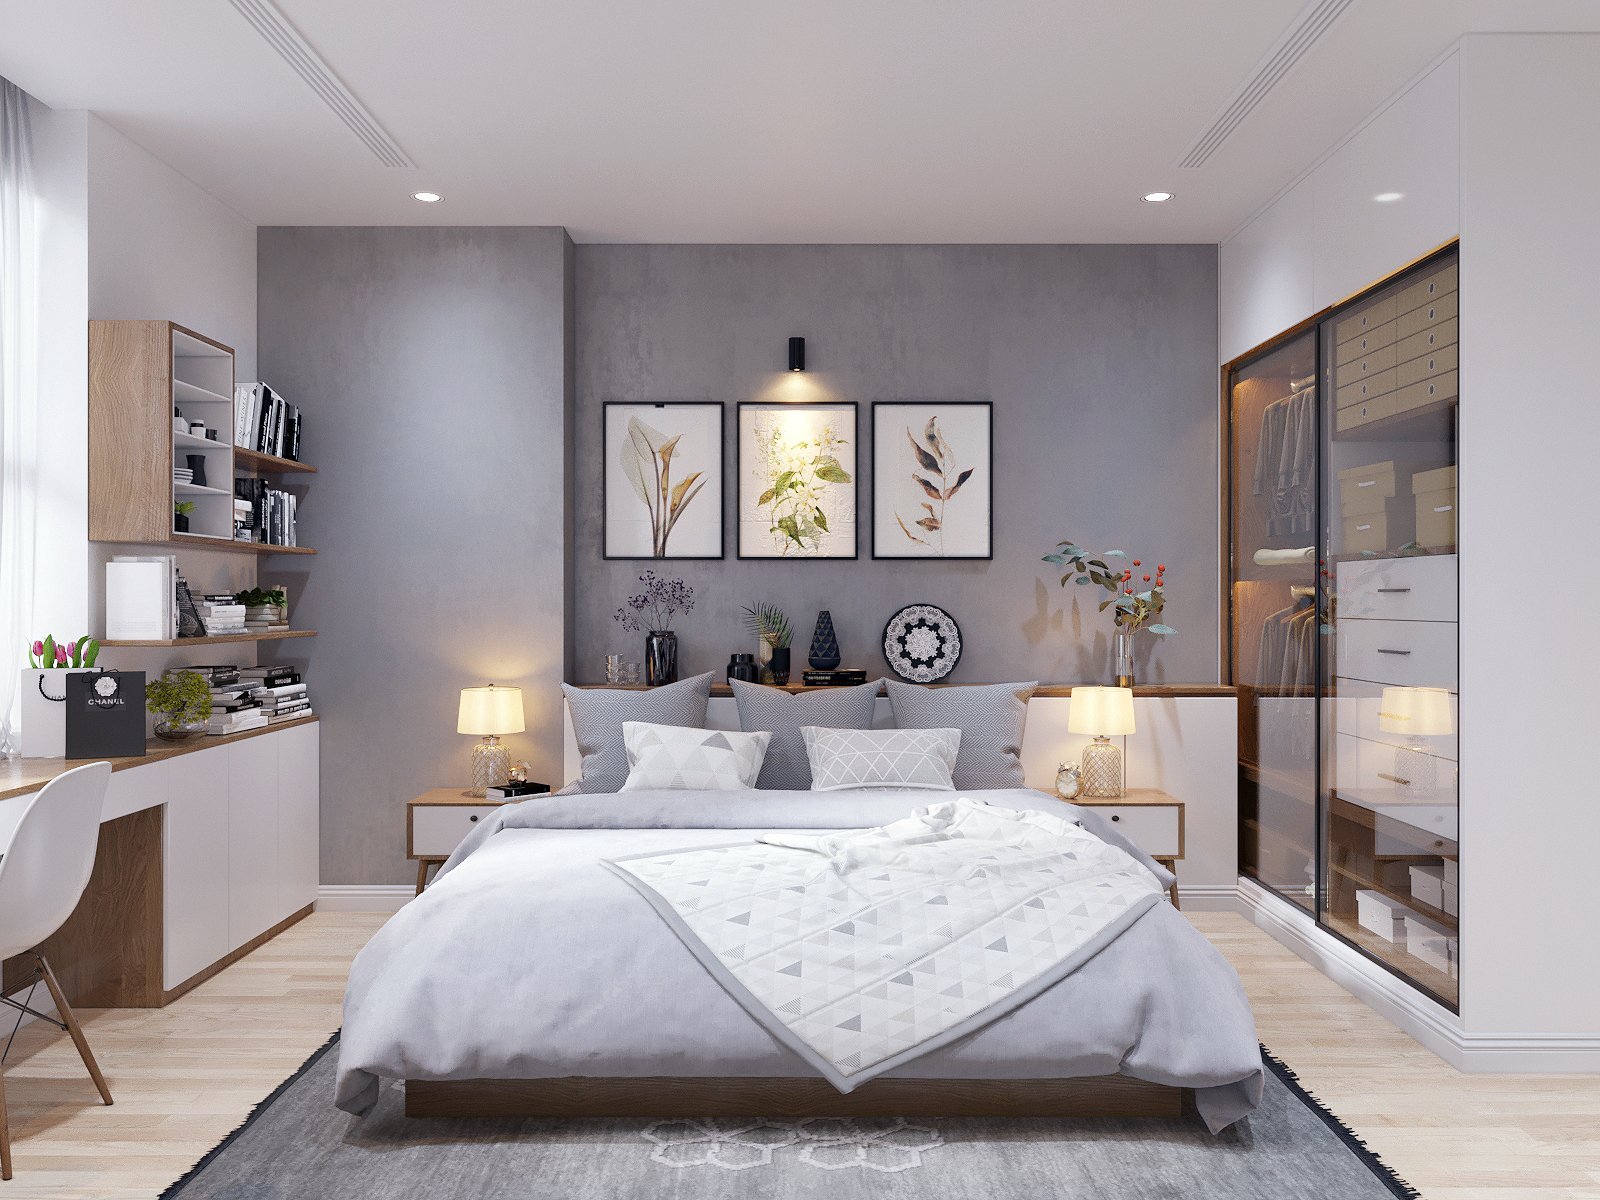 Спальня в стиле модерн — комфортный интерьер в приглушенных тонах (фото+видео обзор и дизайн)